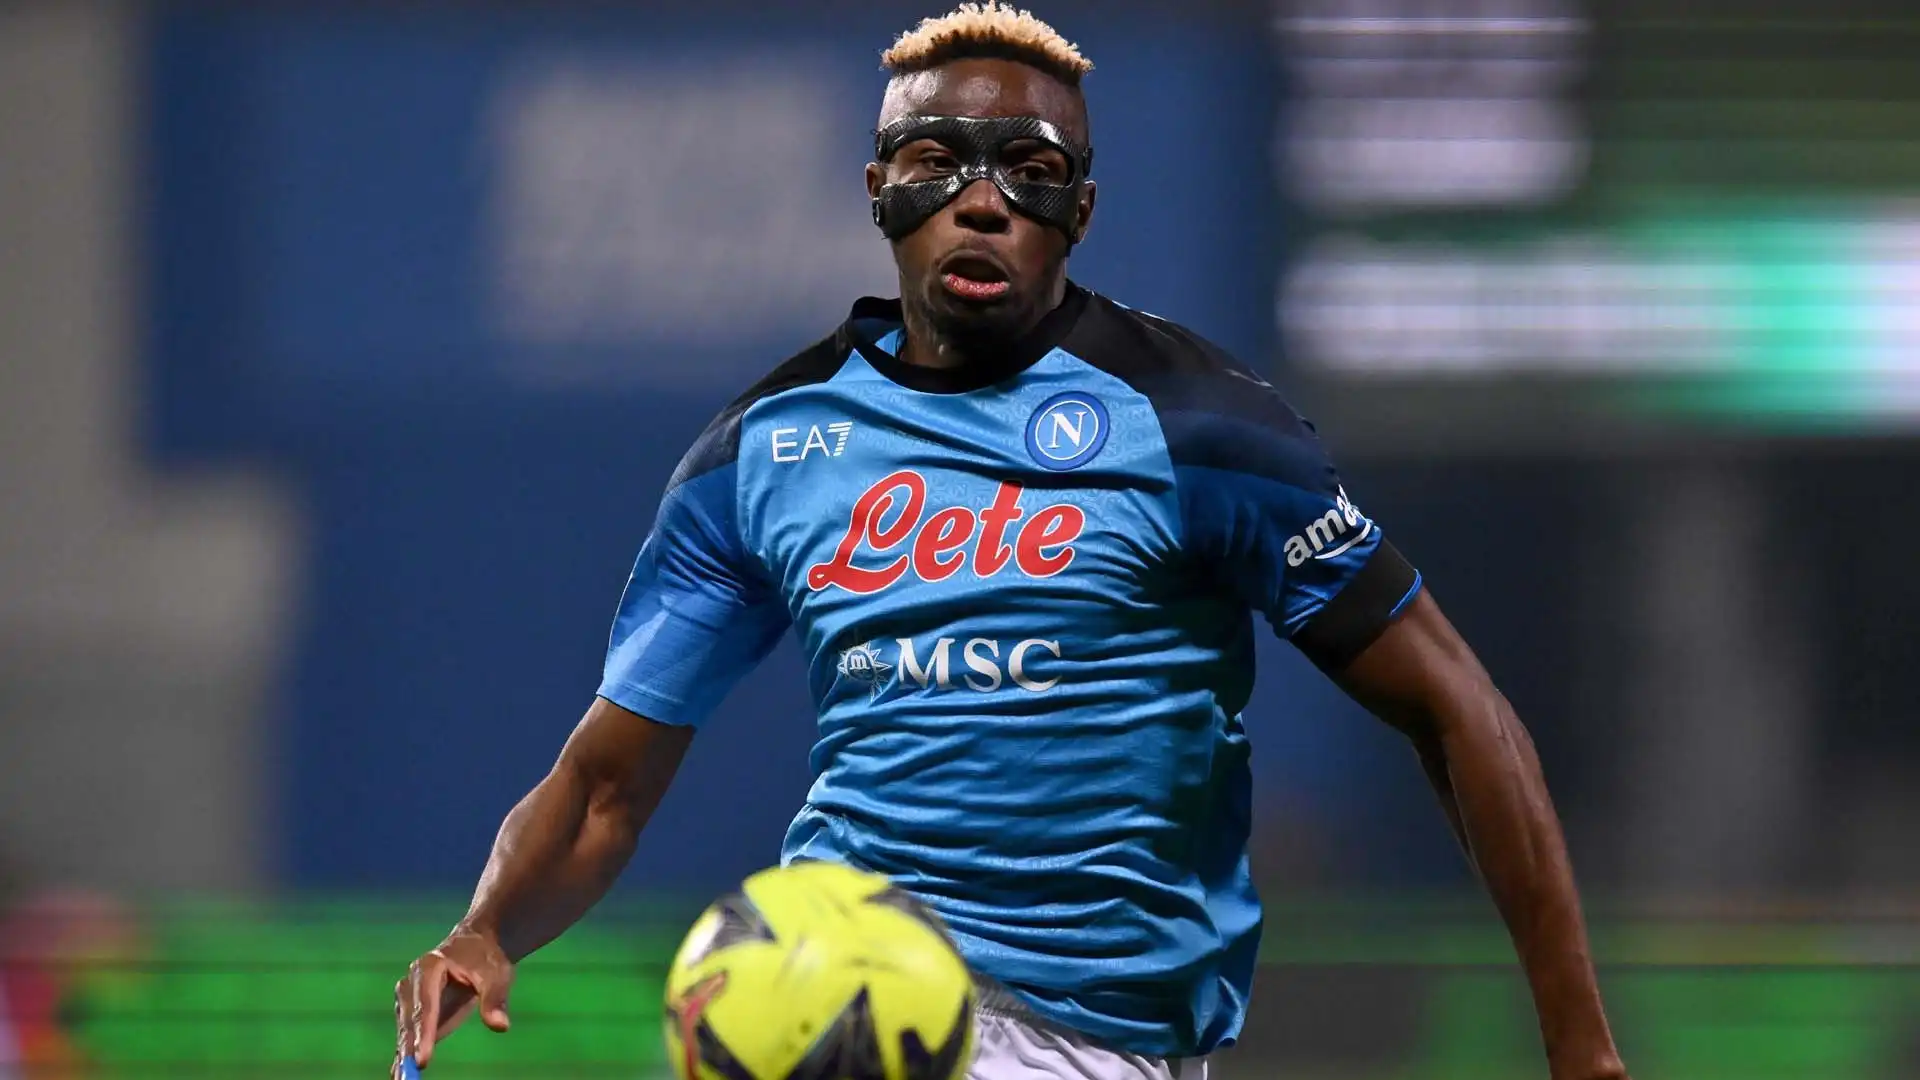 Venerdì sera Sassuolo-Napoli 0-2, azzurri a +18 in classifica sulla seconda, l'Inter